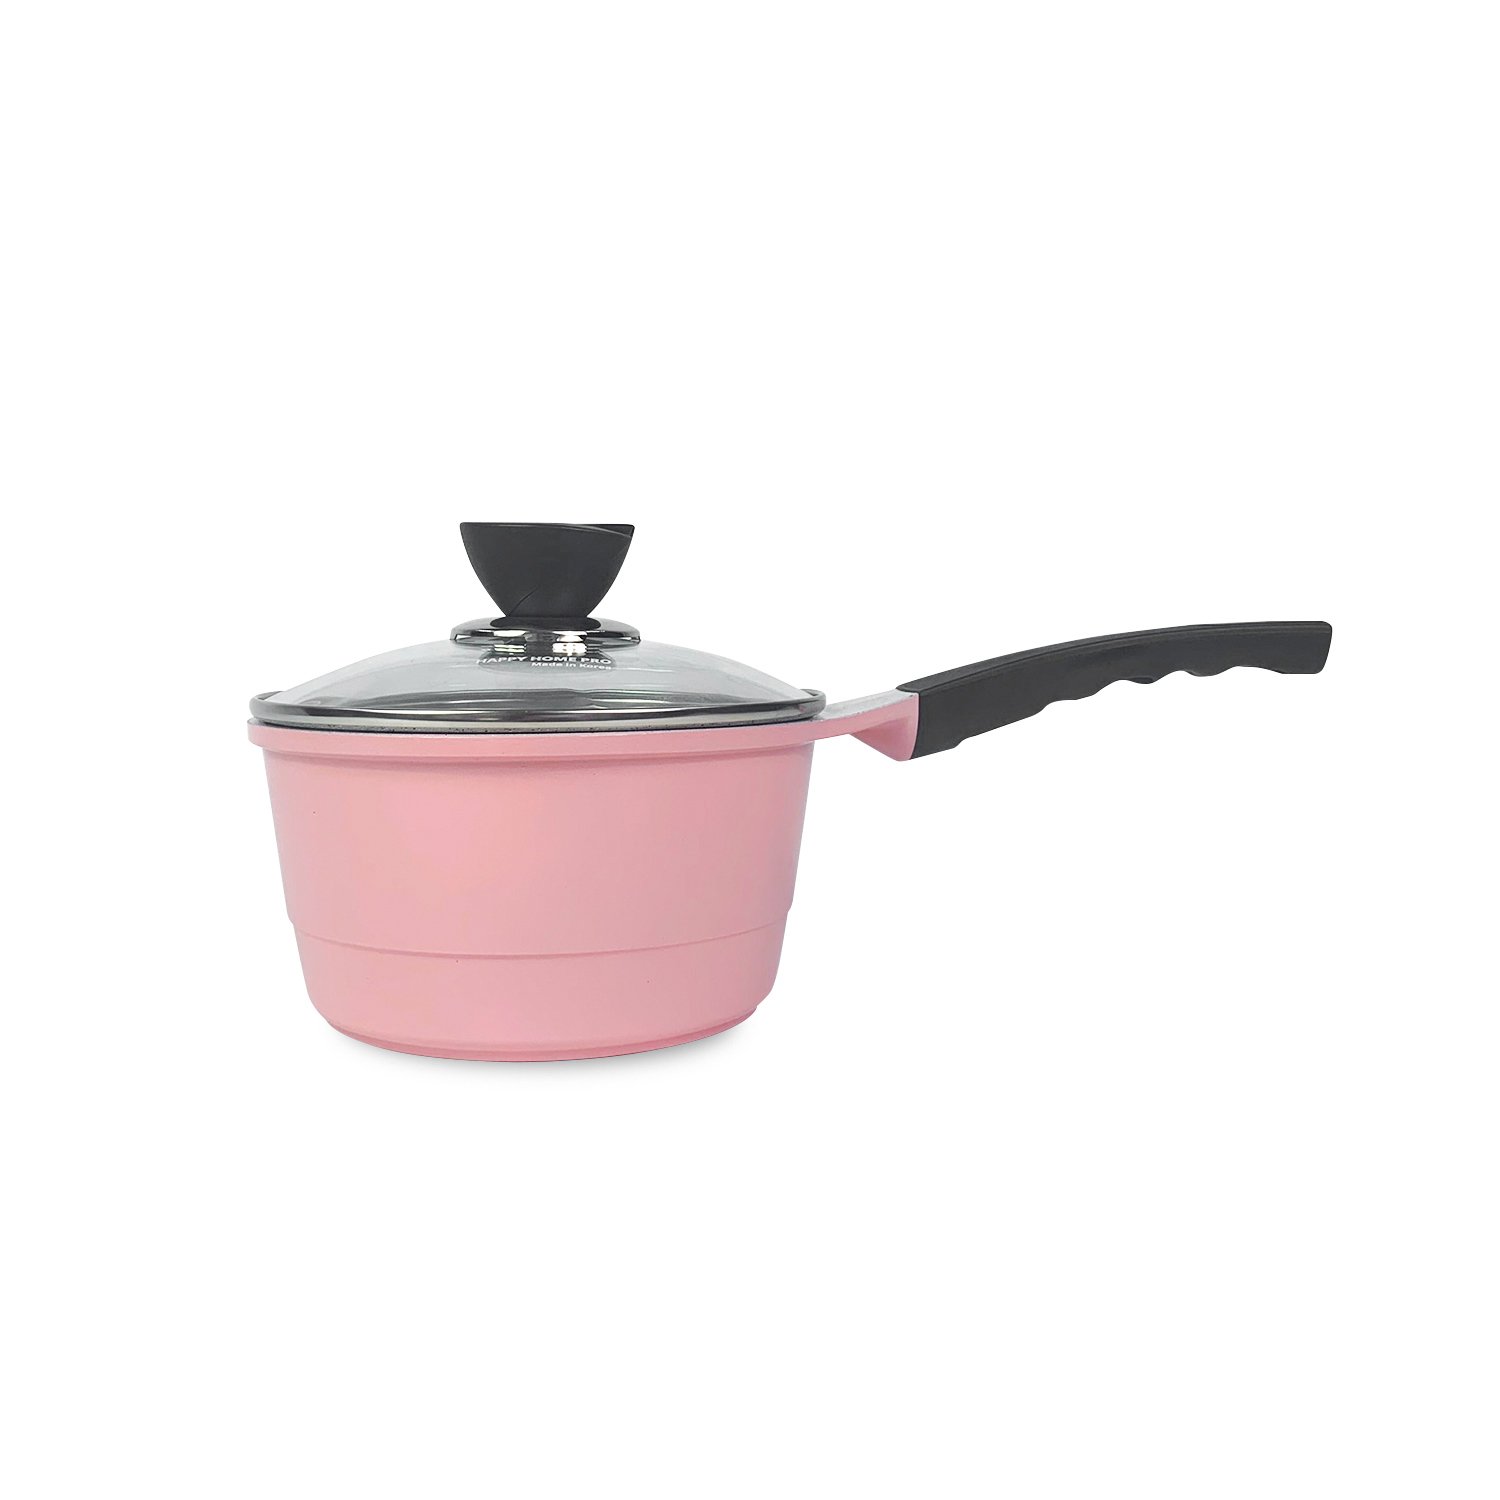 Quánh Nấu Bột cho em bé màu hồng size 18 - Happy Home Pro